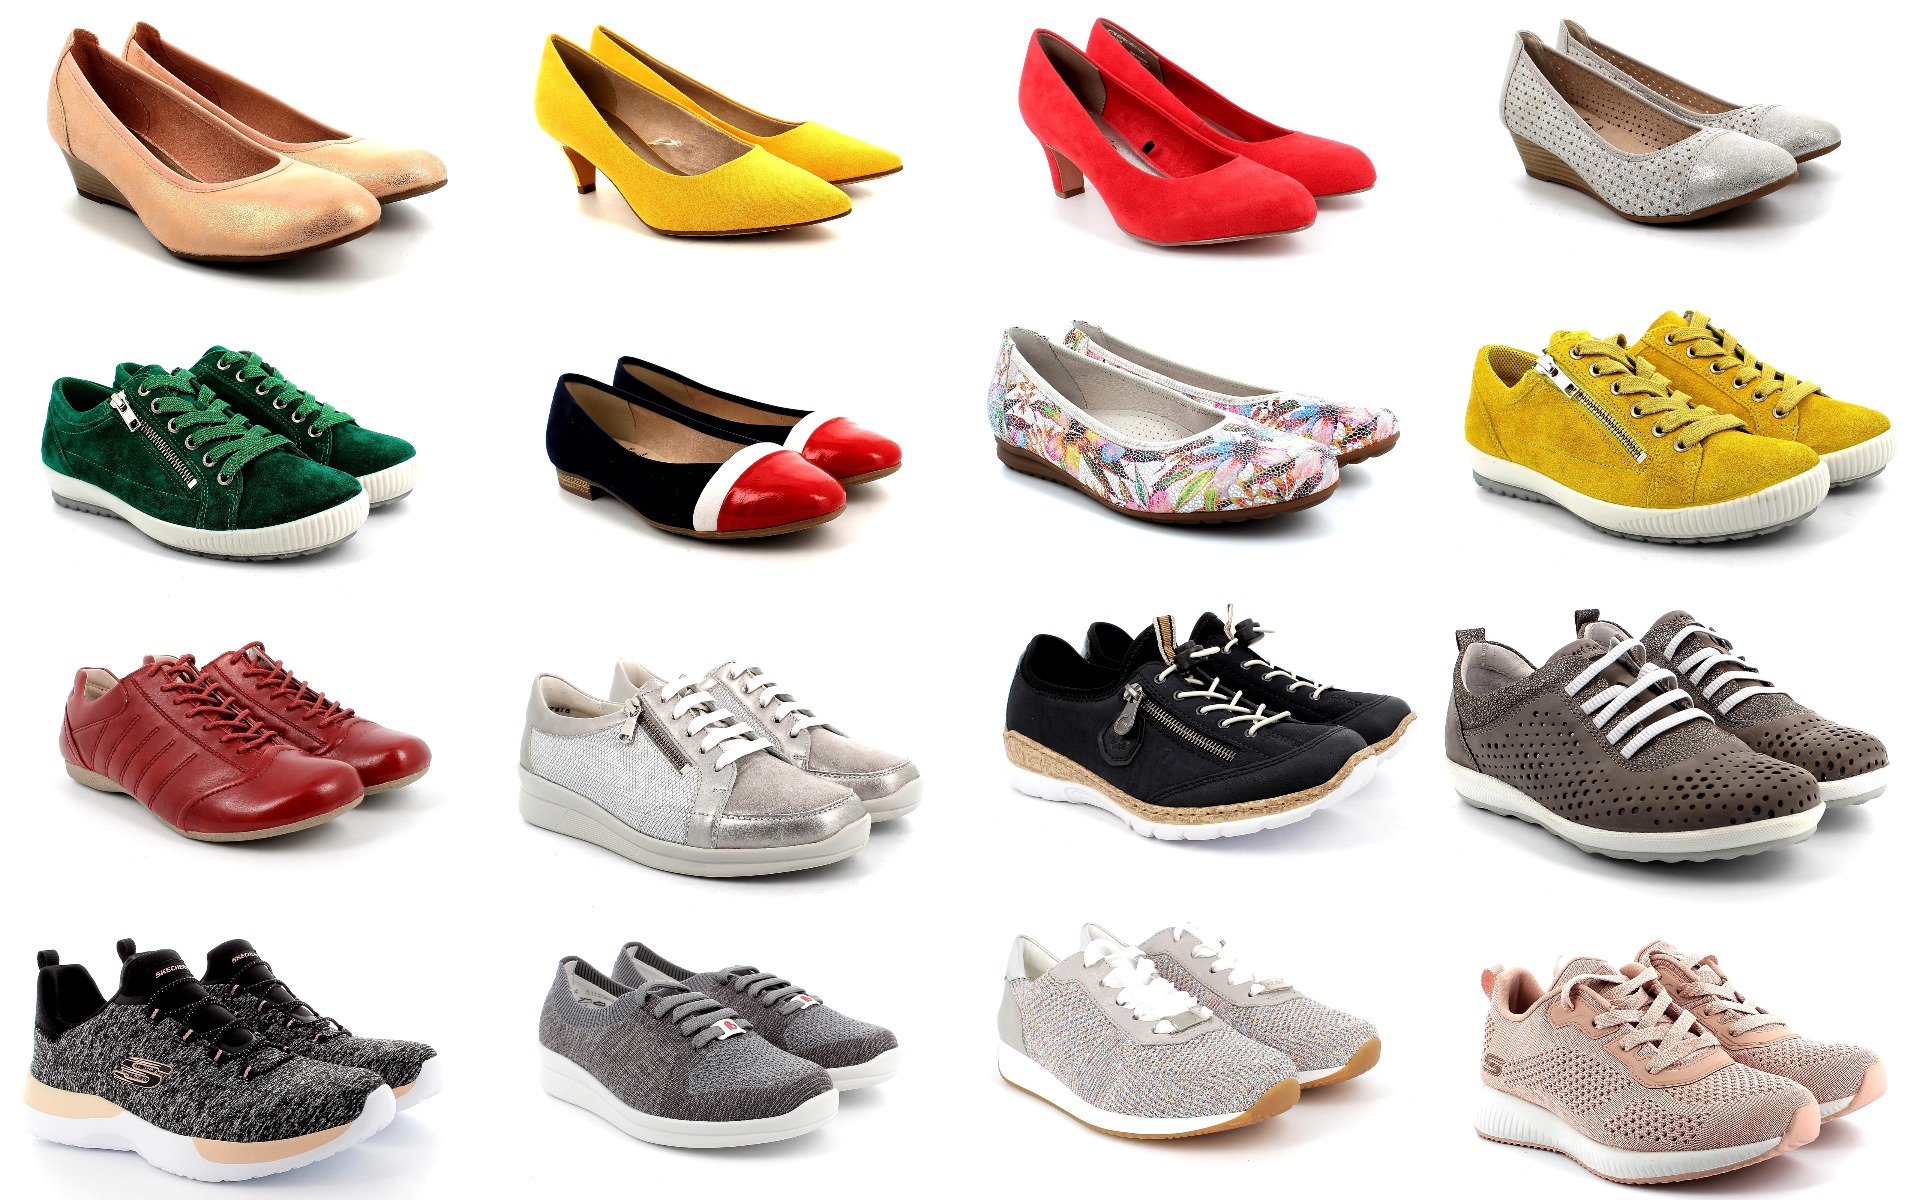 Tavaszi cipők - Valentina cipőbolt